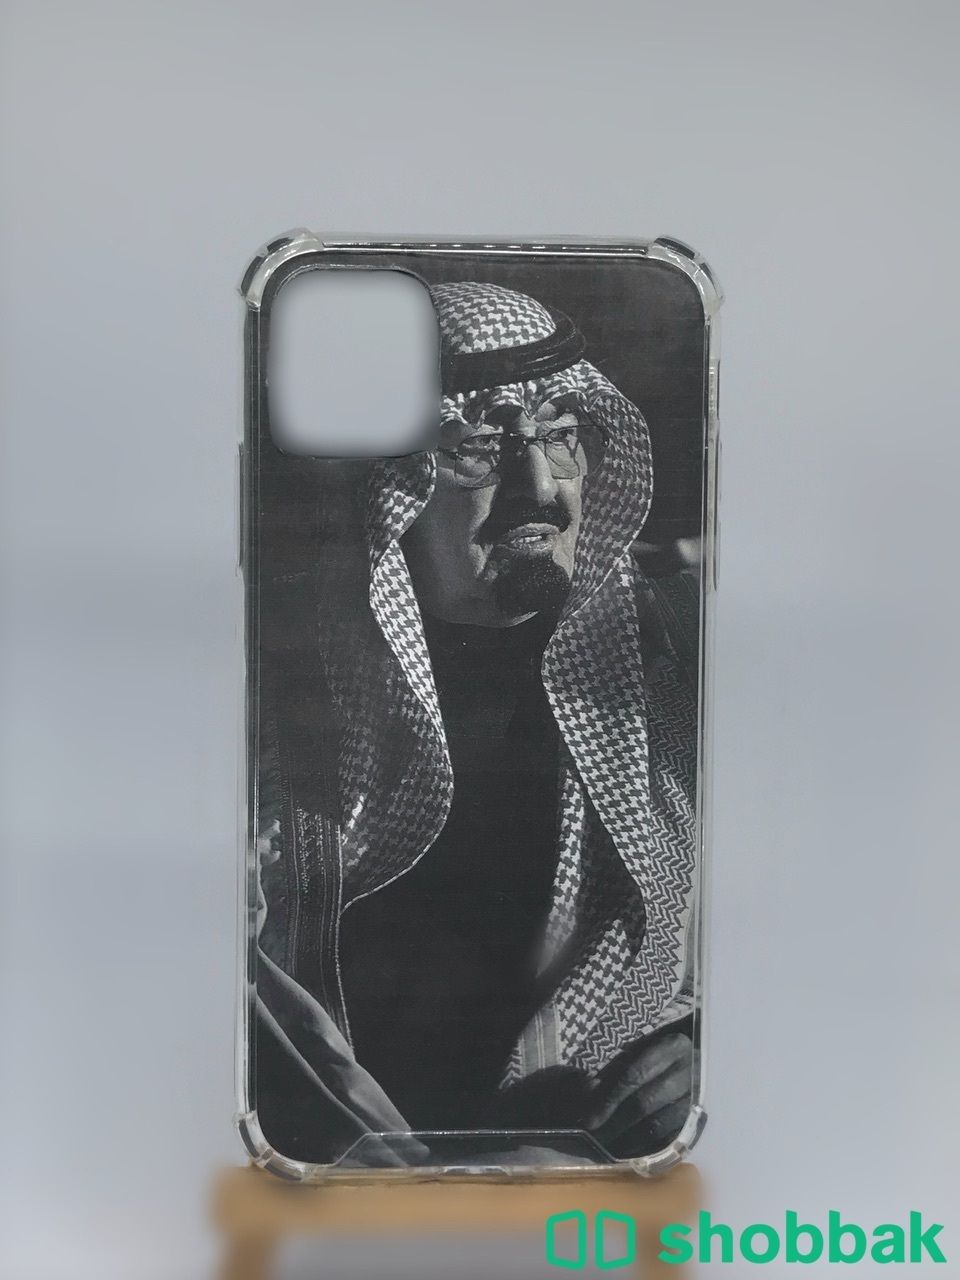 كڤرات جوال من رسم يدي او طباعه حسب الطلب للبيع Shobbak Saudi Arabia